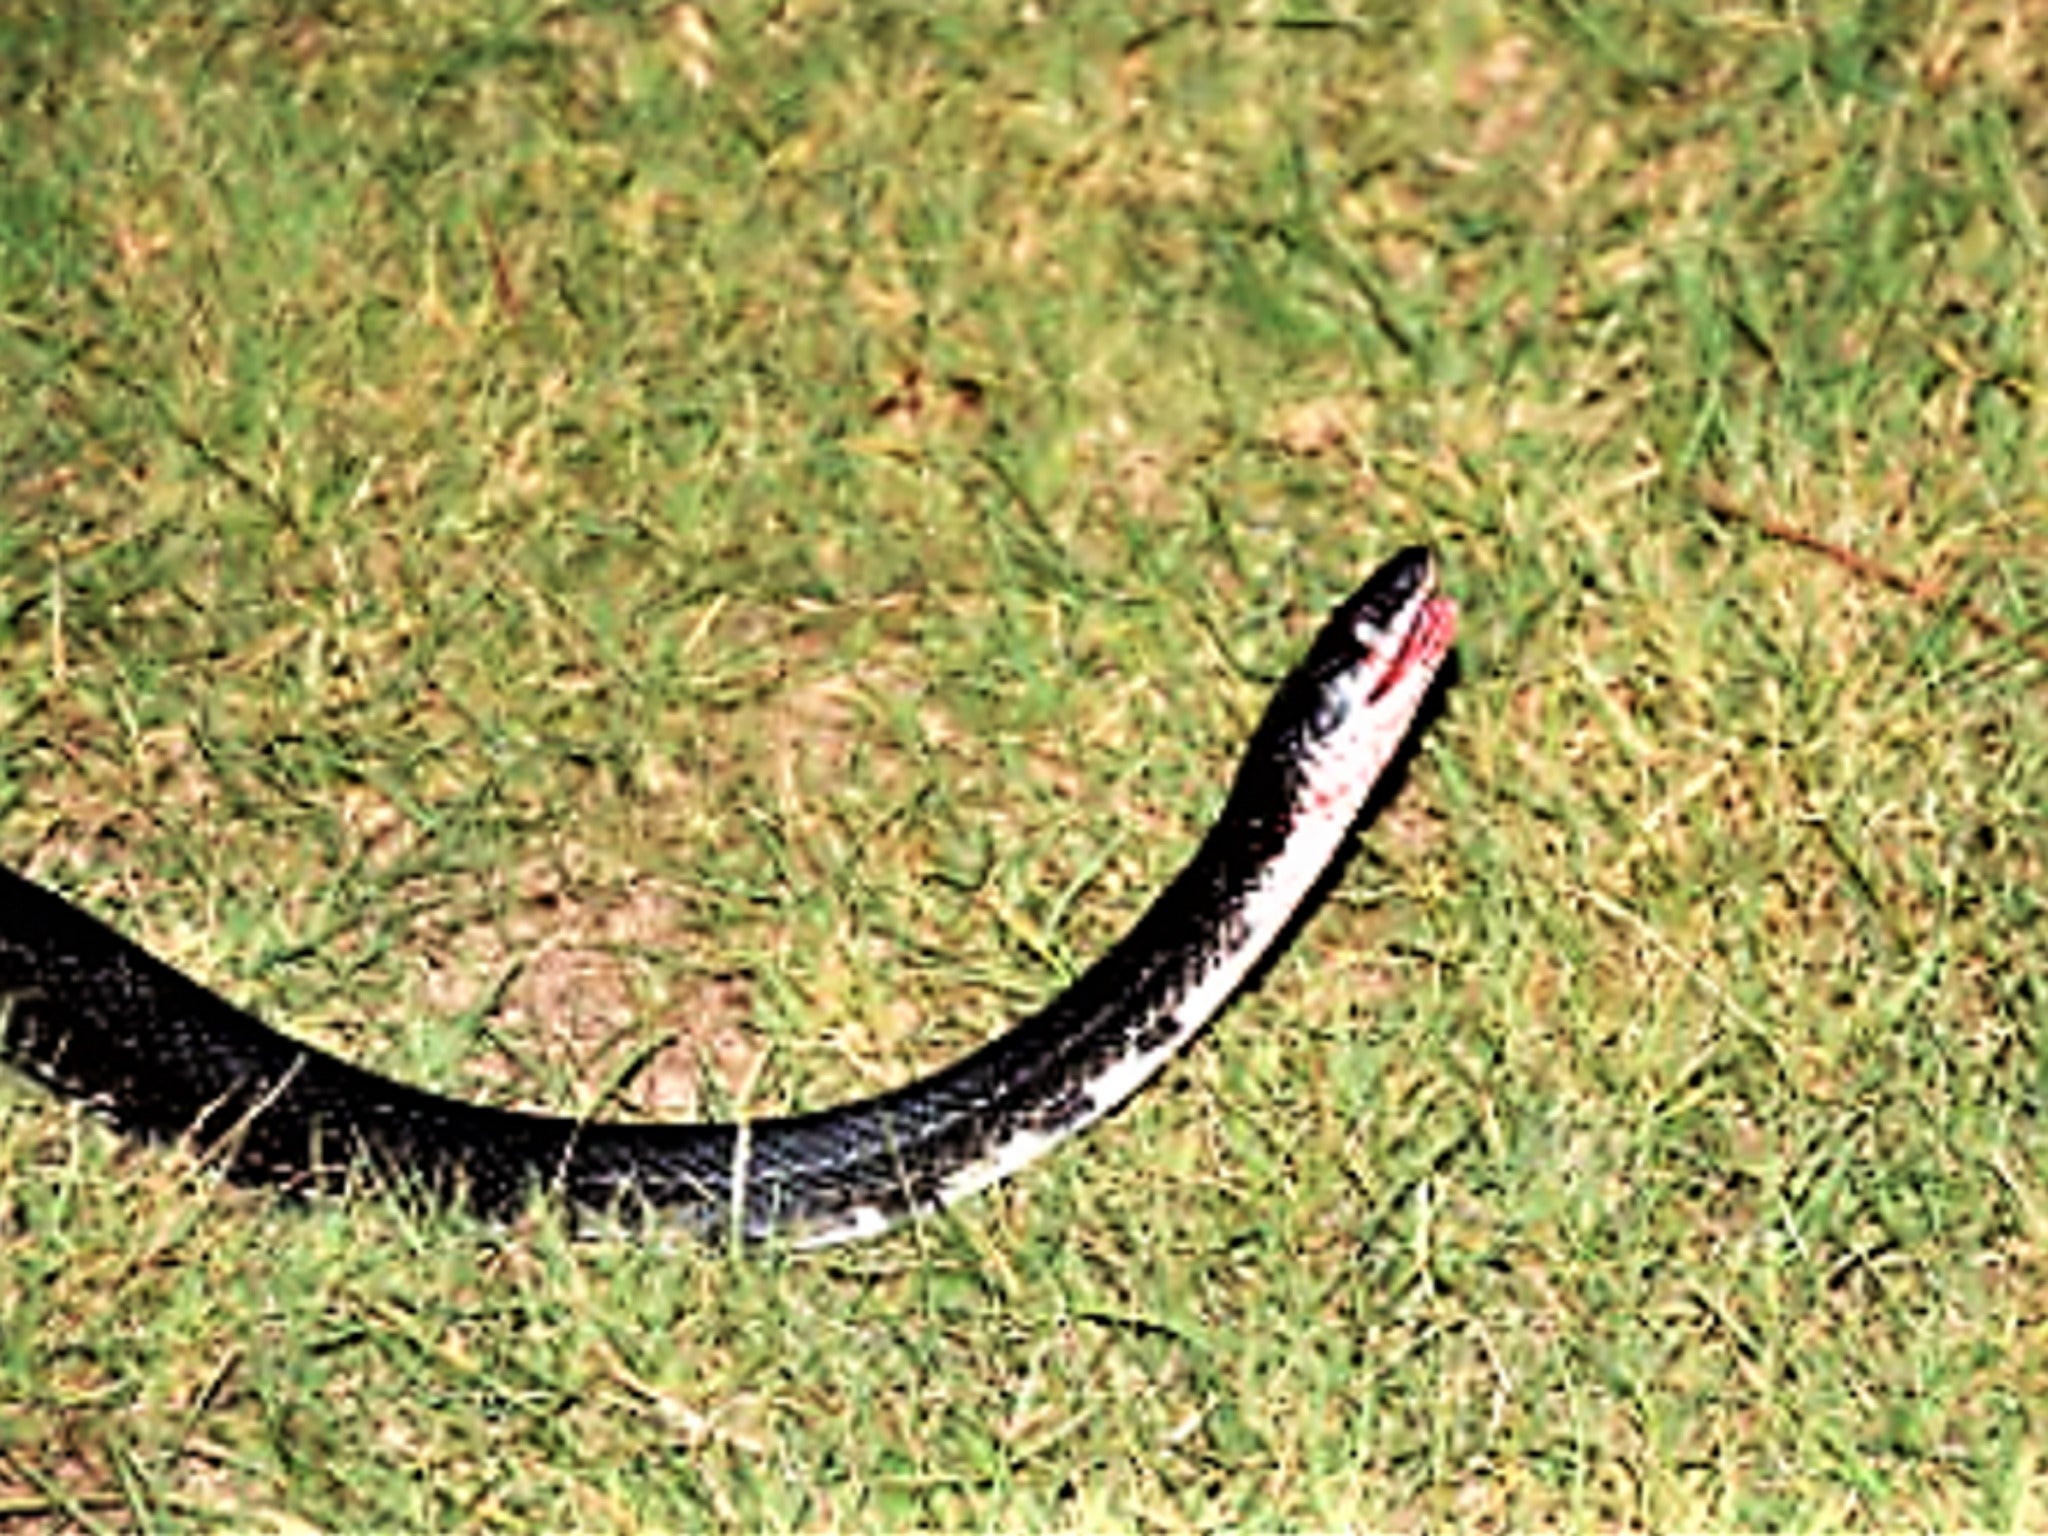 rubber snakes argos